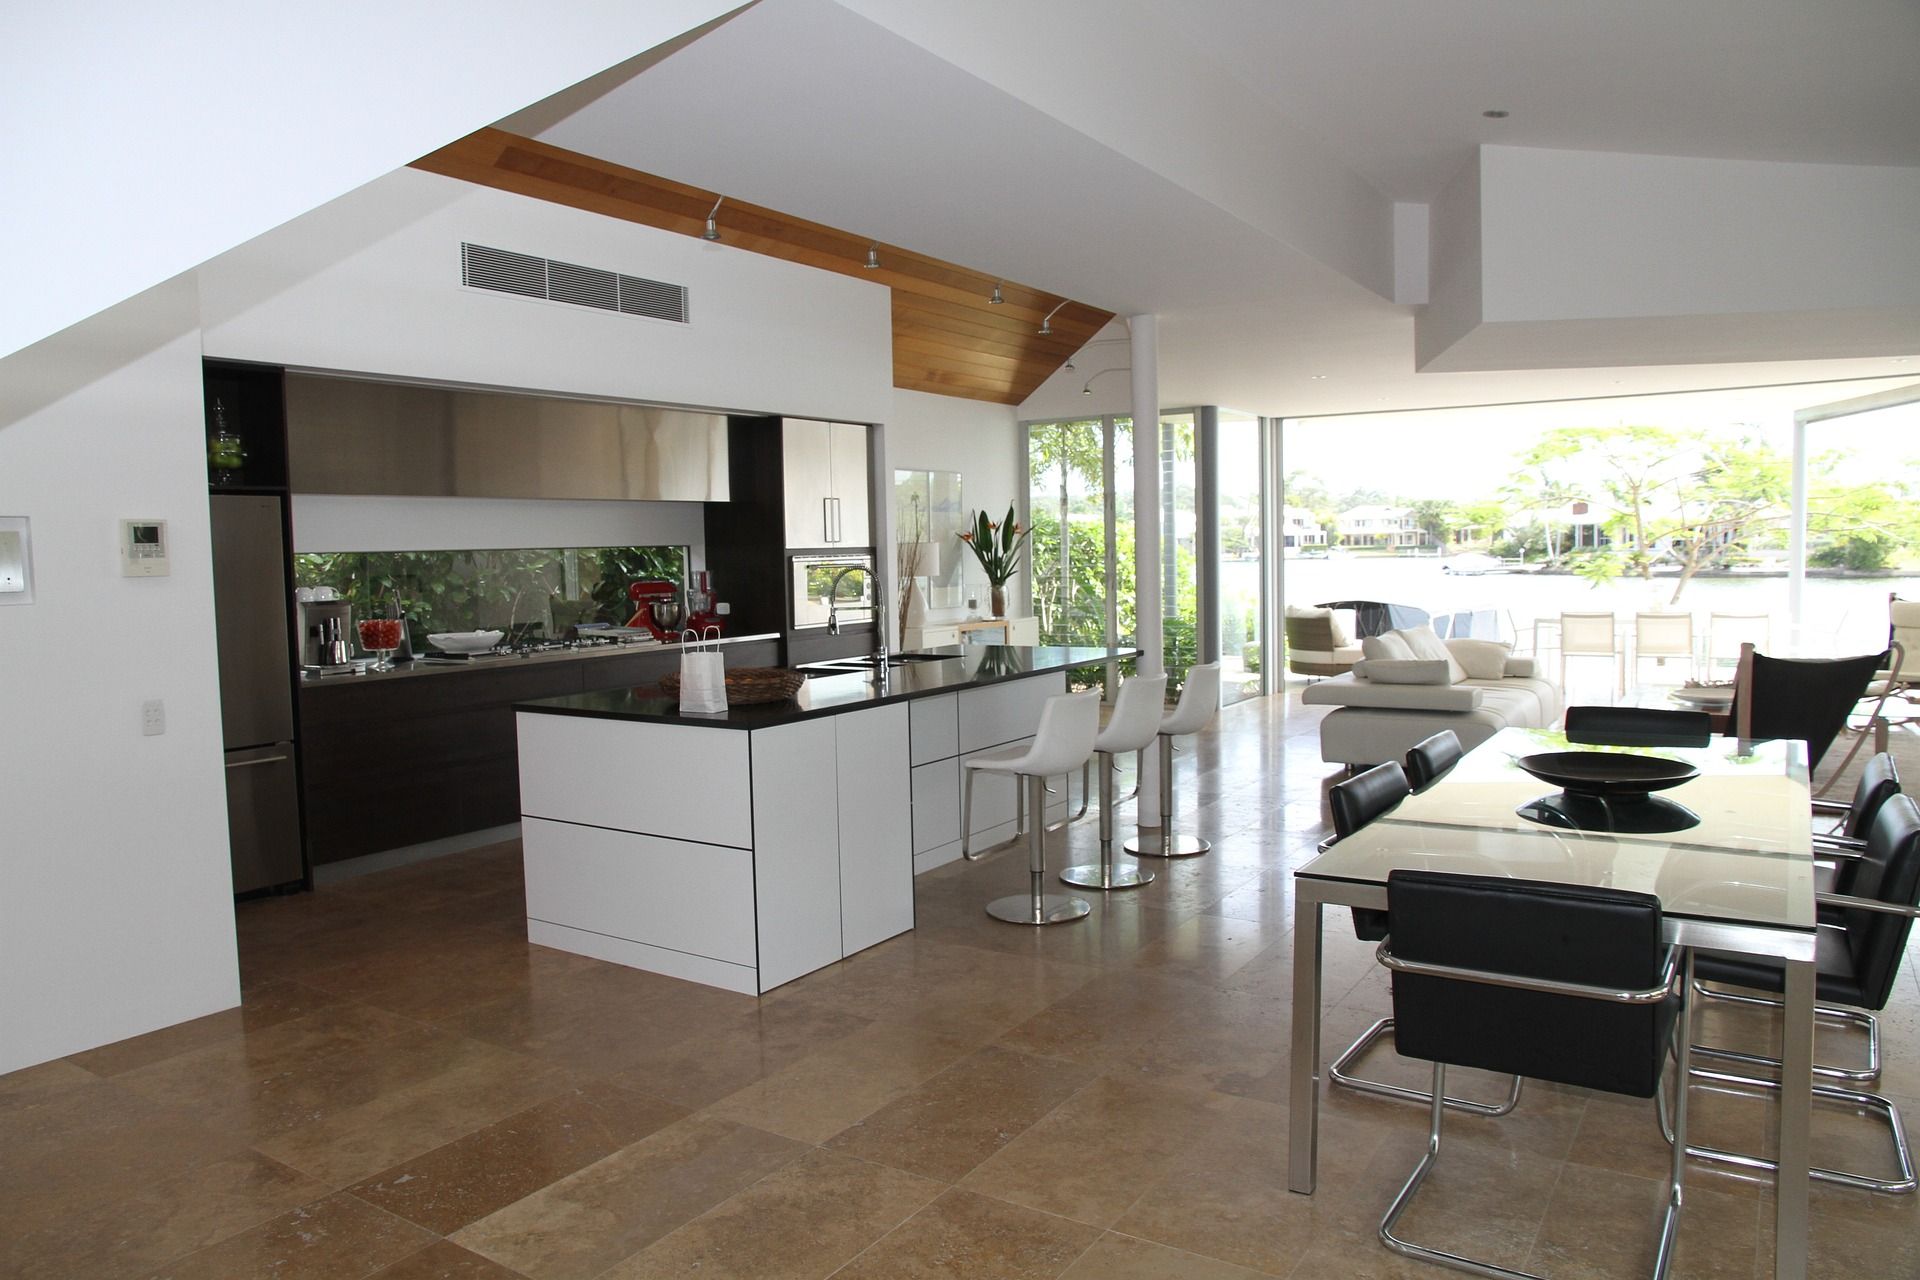 Open kitchen – Contemporary design for an original kitchen, 10, eurocraftswfl.com